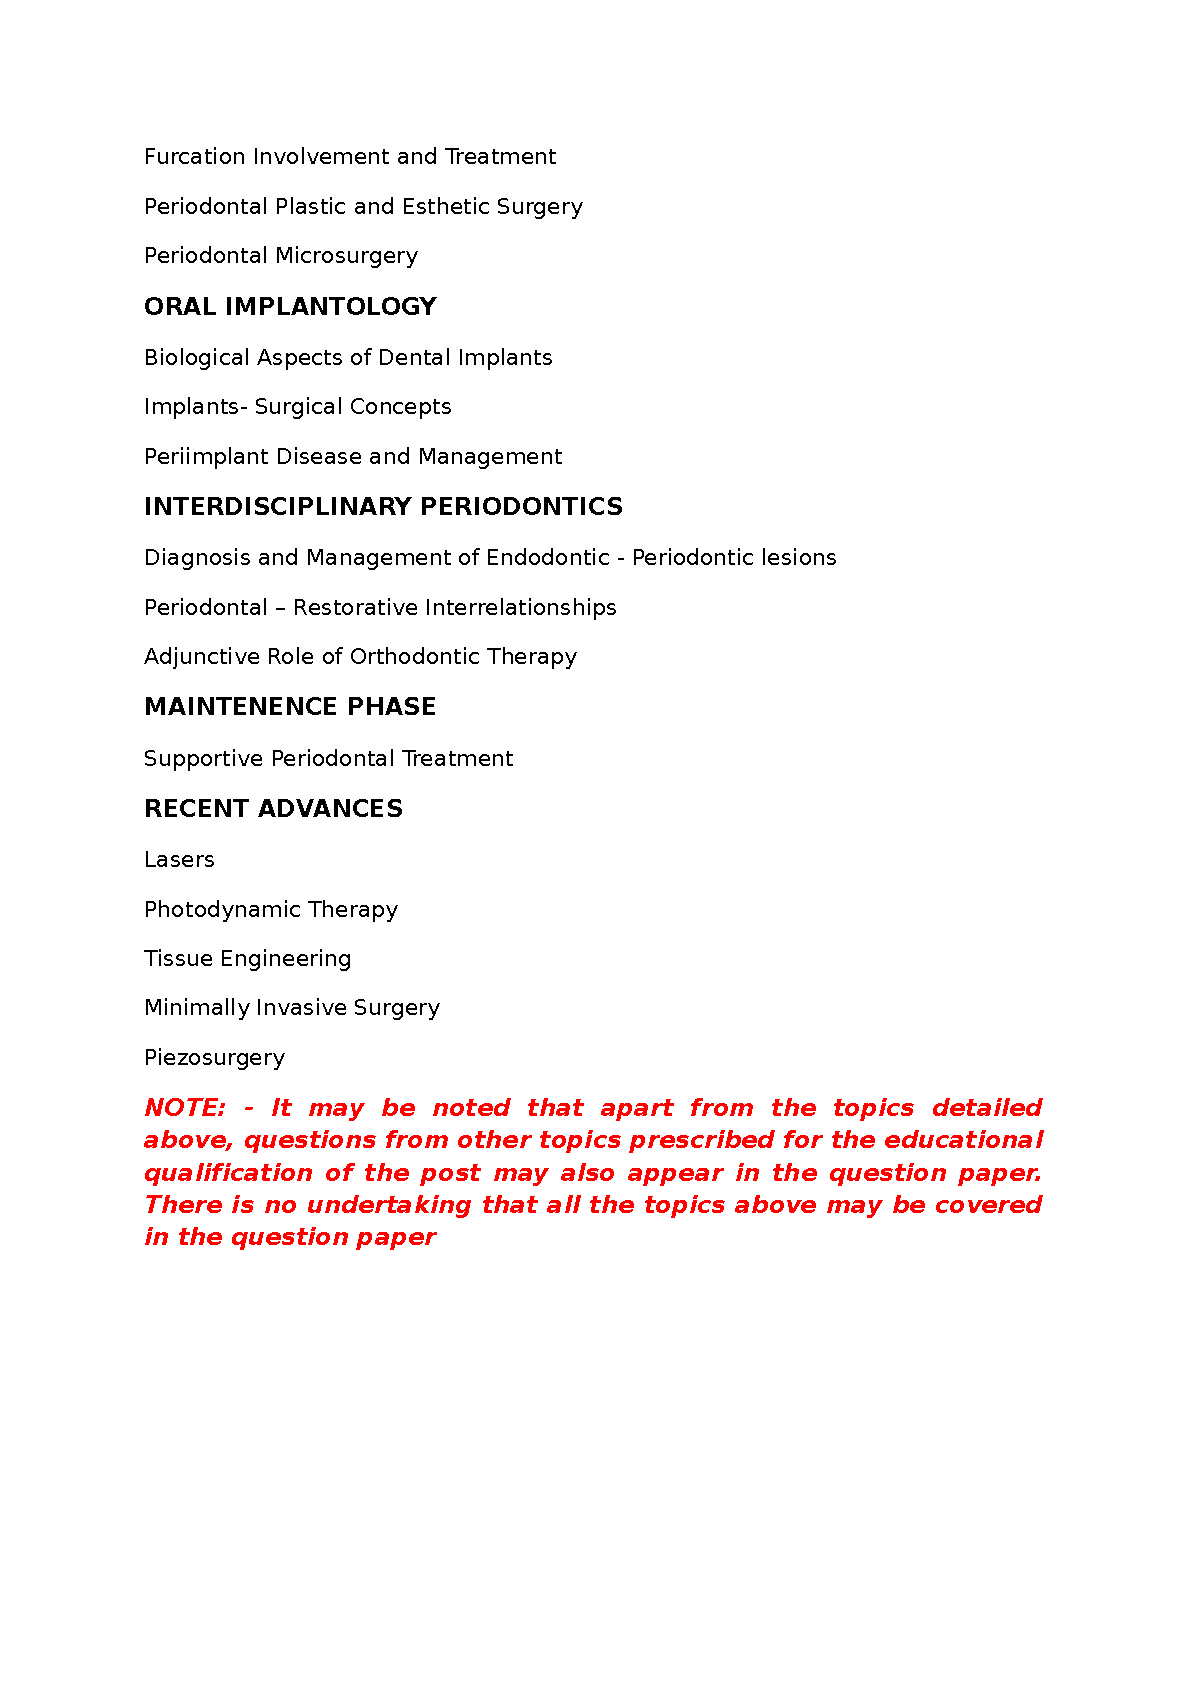 KPSC Syllabus 2019 Assistant Professor In Periodontics - Notification Image 3